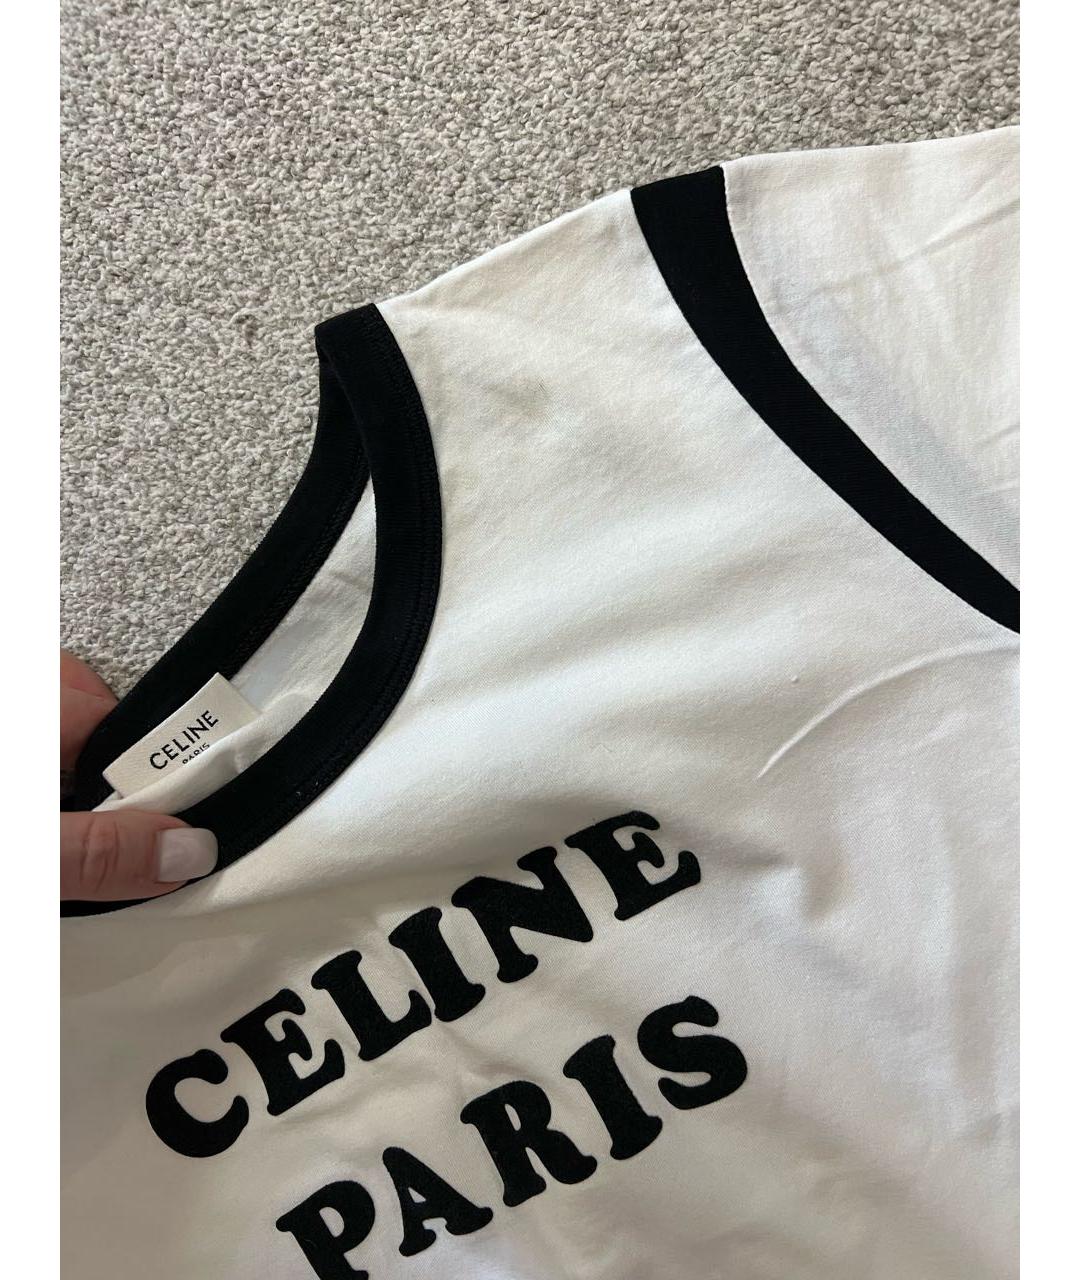 CELINE PRE-OWNED Белая хлопковая футболка, фото 4